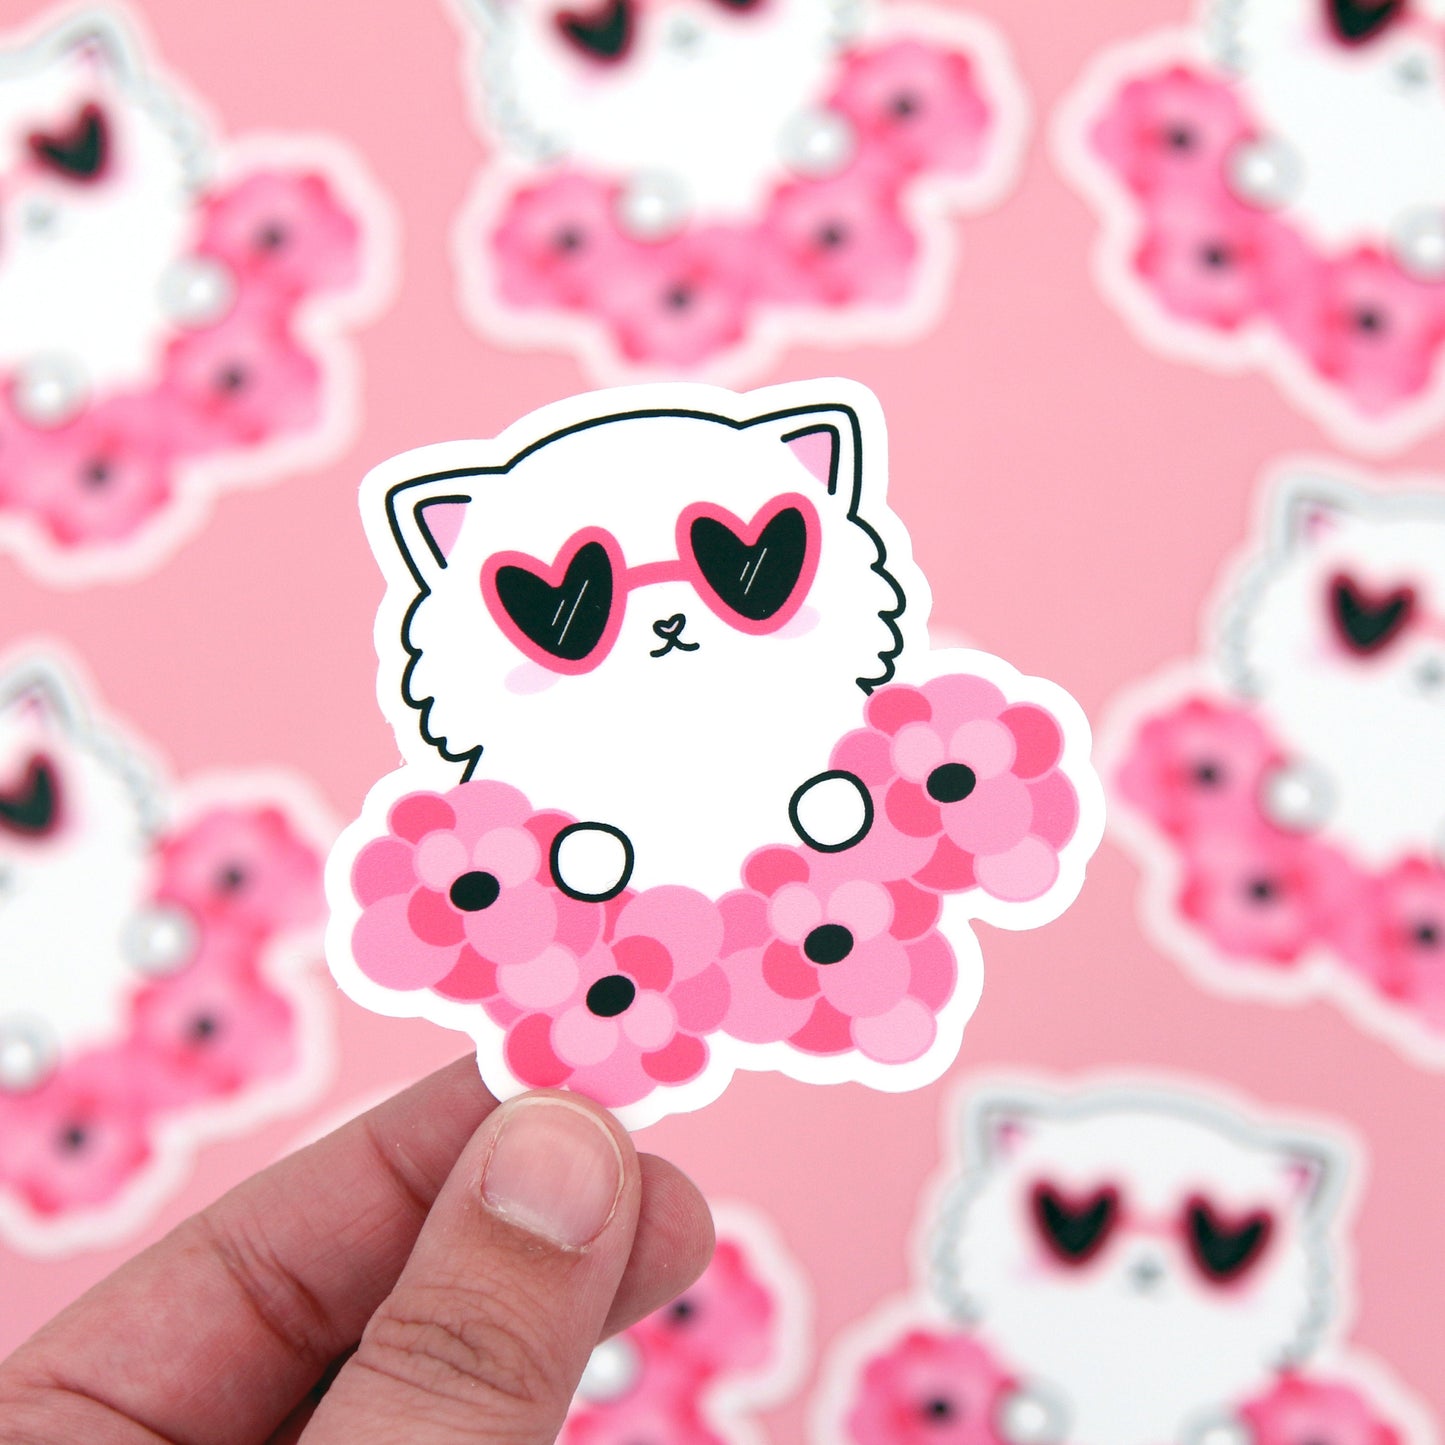 Peeking Cat Vinyl Sticker - Vinyl Die Cut Sticker - Cat Stickers - Vinyl Sticker - Vinyl Decal - Cat Decal - Valentine's Day - Floral Cat